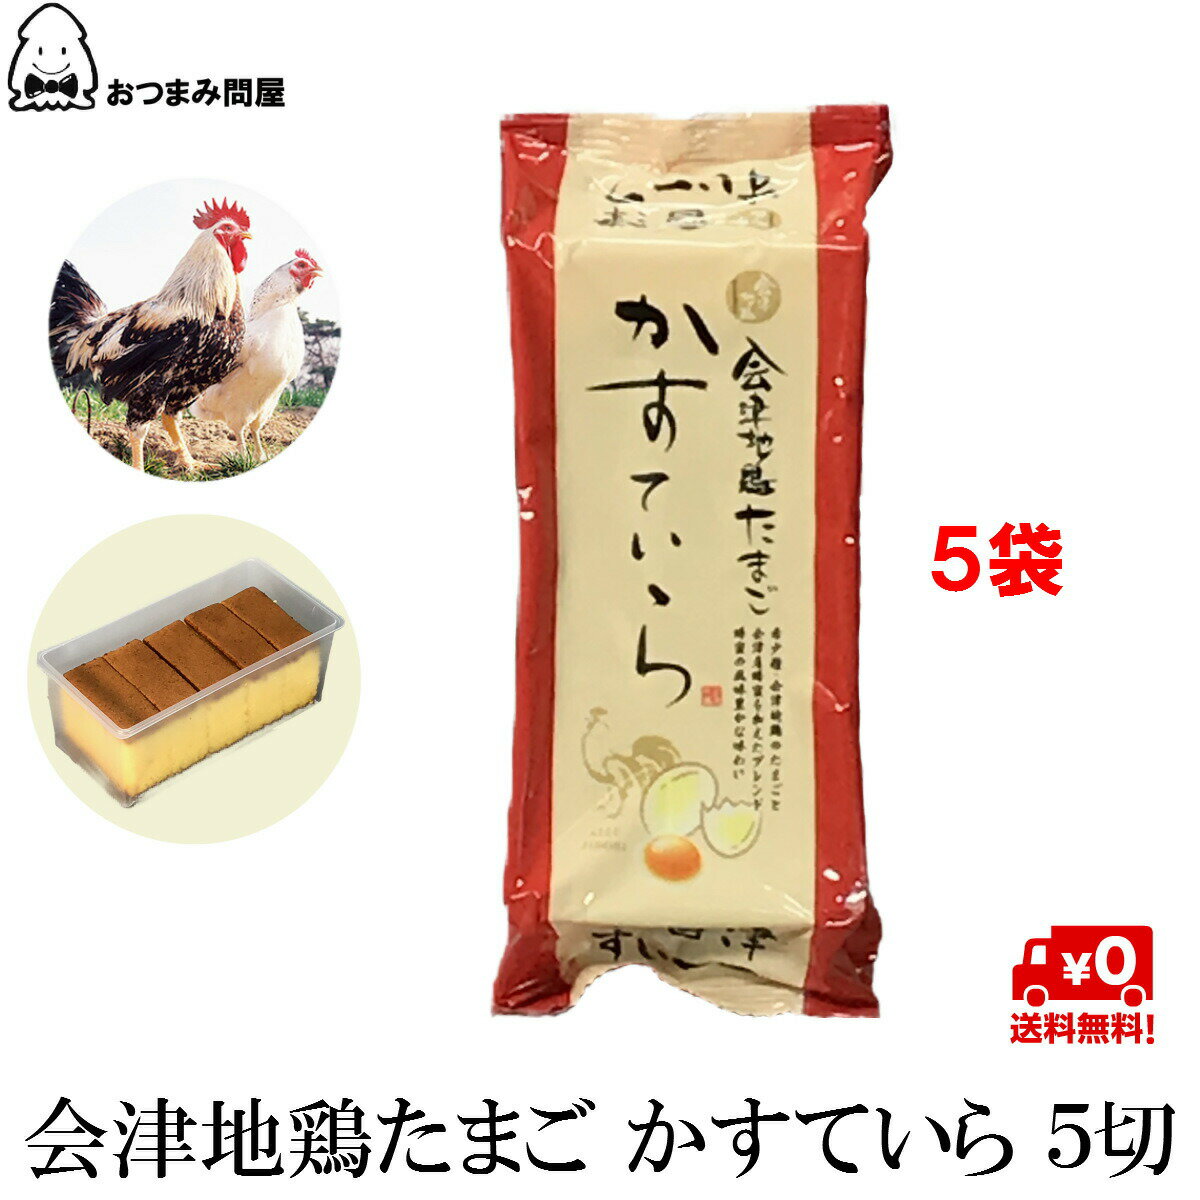 會津地雞網 會津地雞 蜂蜜蛋糕5切 x 5盒 常溫保存 福島 旬食福来 日本必買 | 日本樂天熱銷